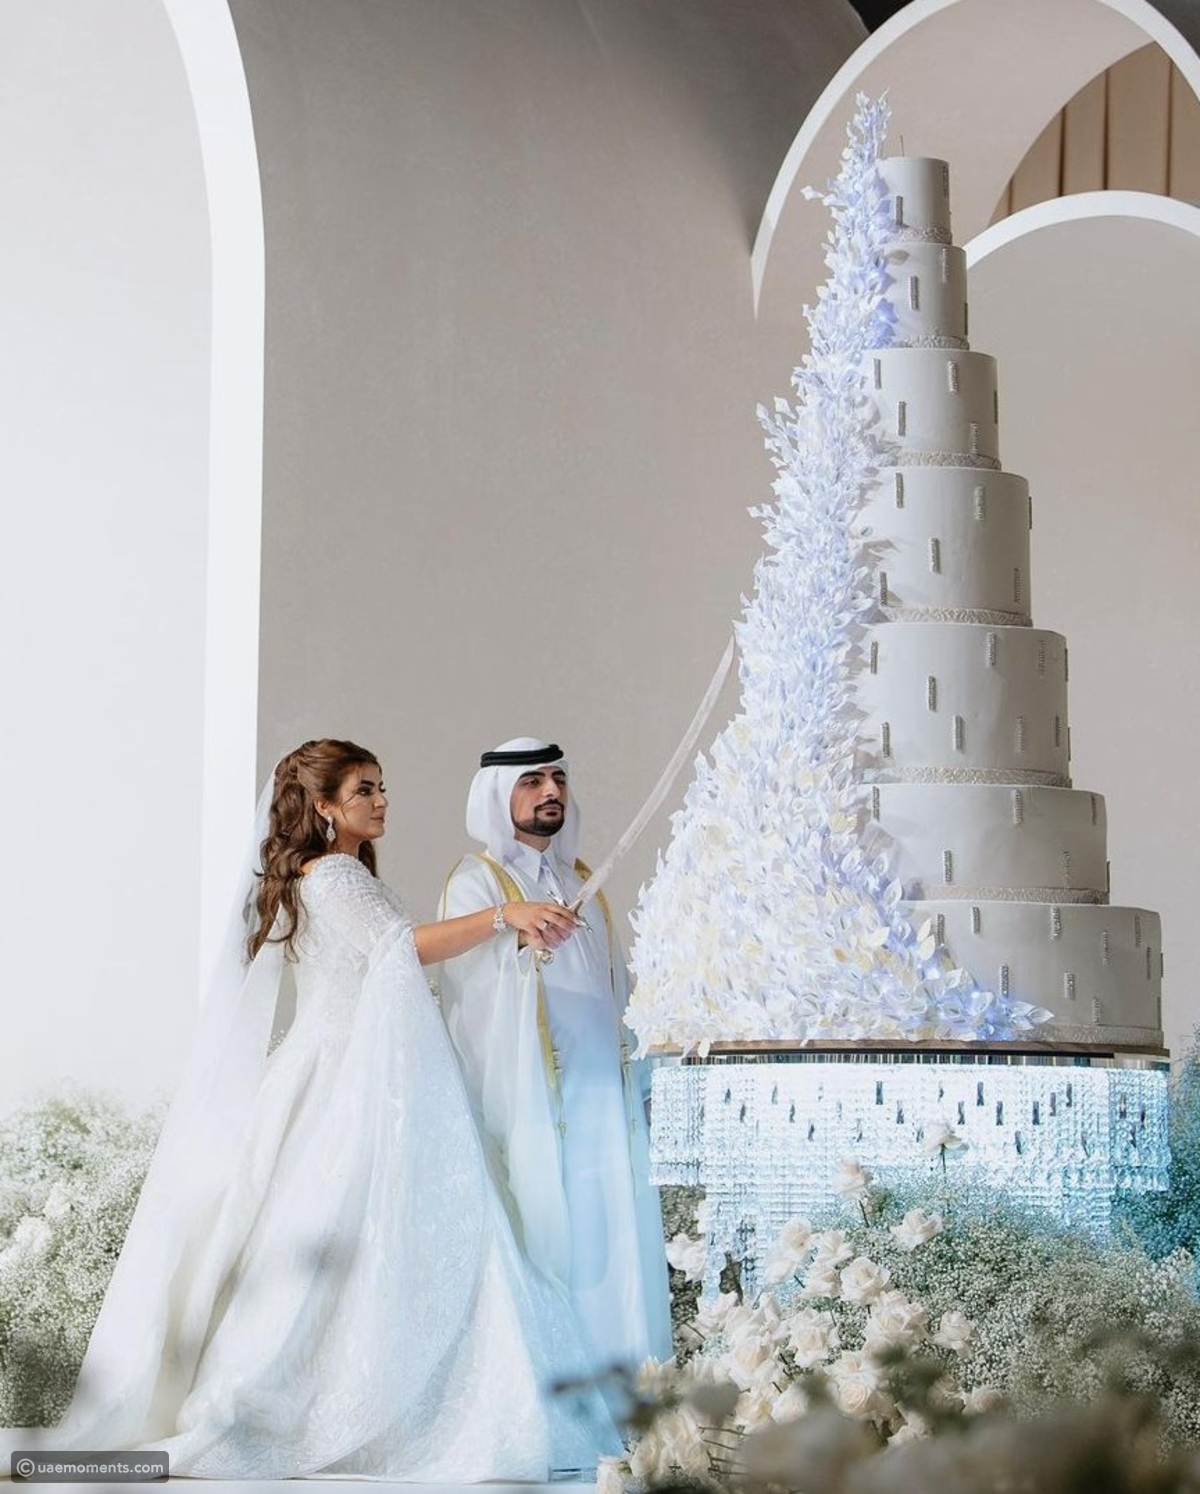 عکس/عروسی دختر حاکم دبی با بازرگان ثروتمند اماراتی!